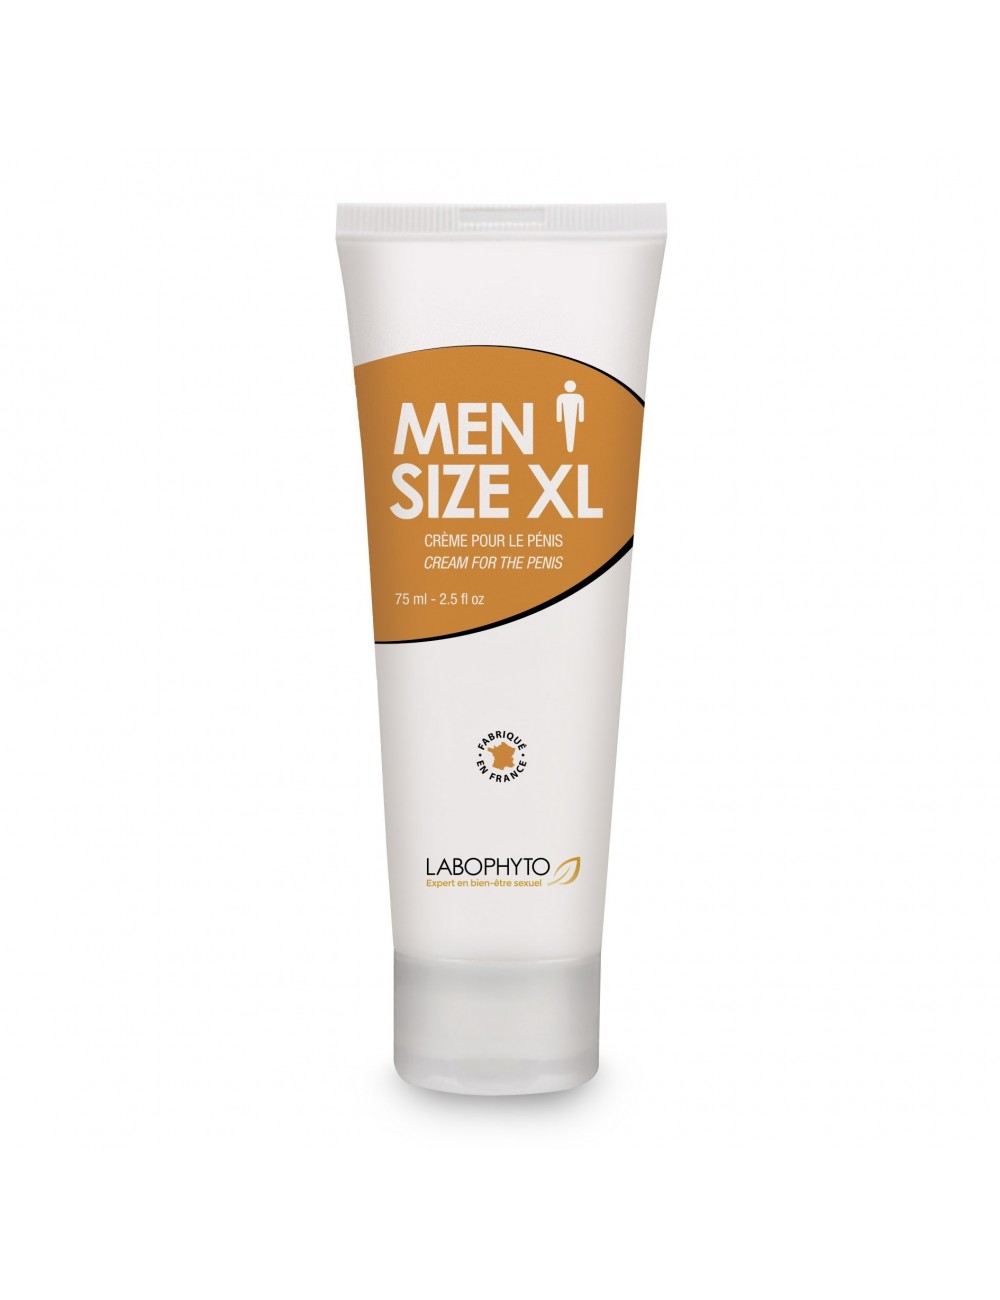 Crème Mensize XL 75ml pour amélioré l'erection - LAB-3800 - Plaisirs Intimes - Labophyto